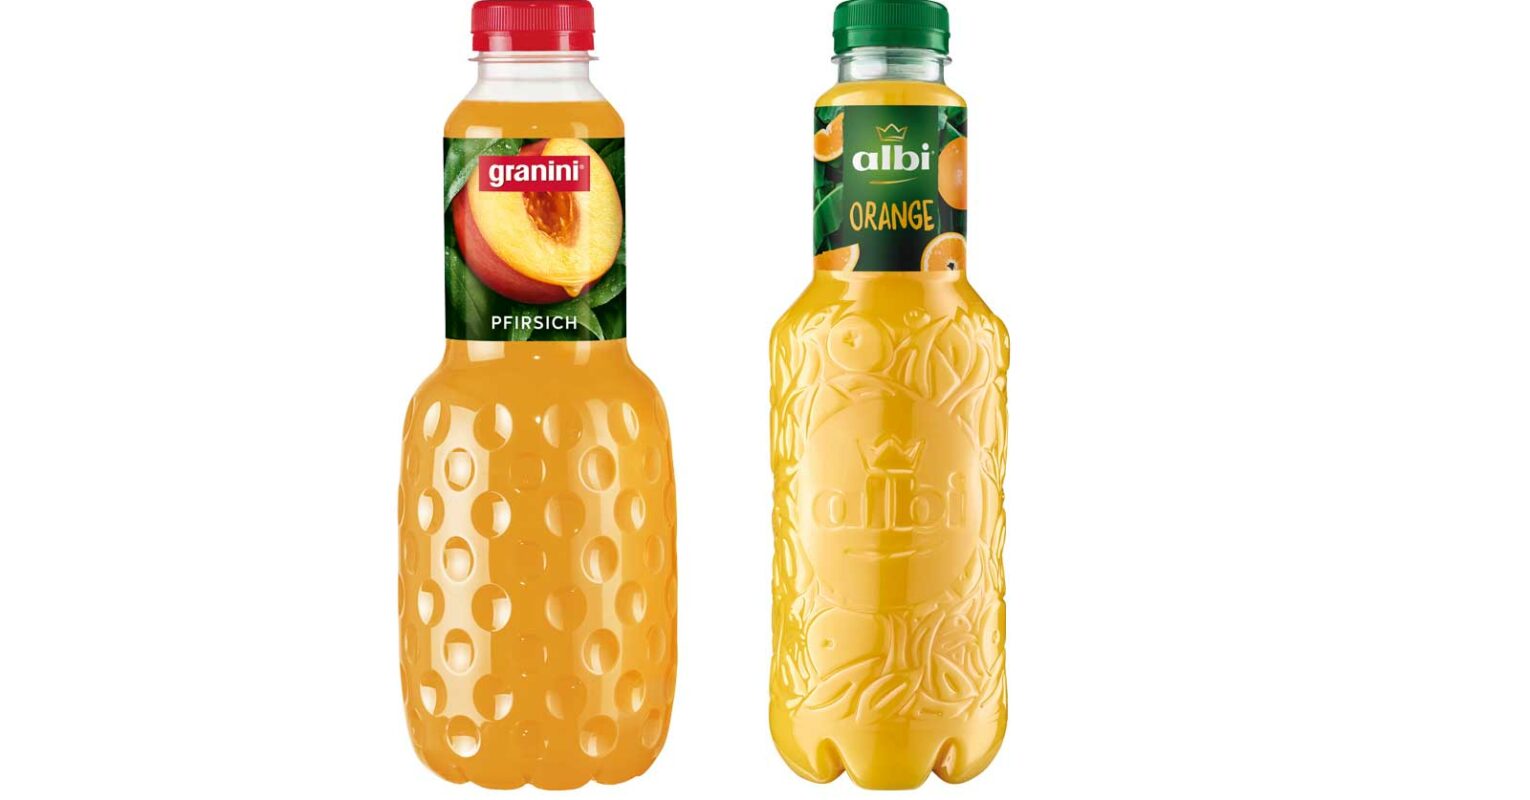 Der Granini-Flasche zu ähnlich – Albi hat weiter Regalverbot